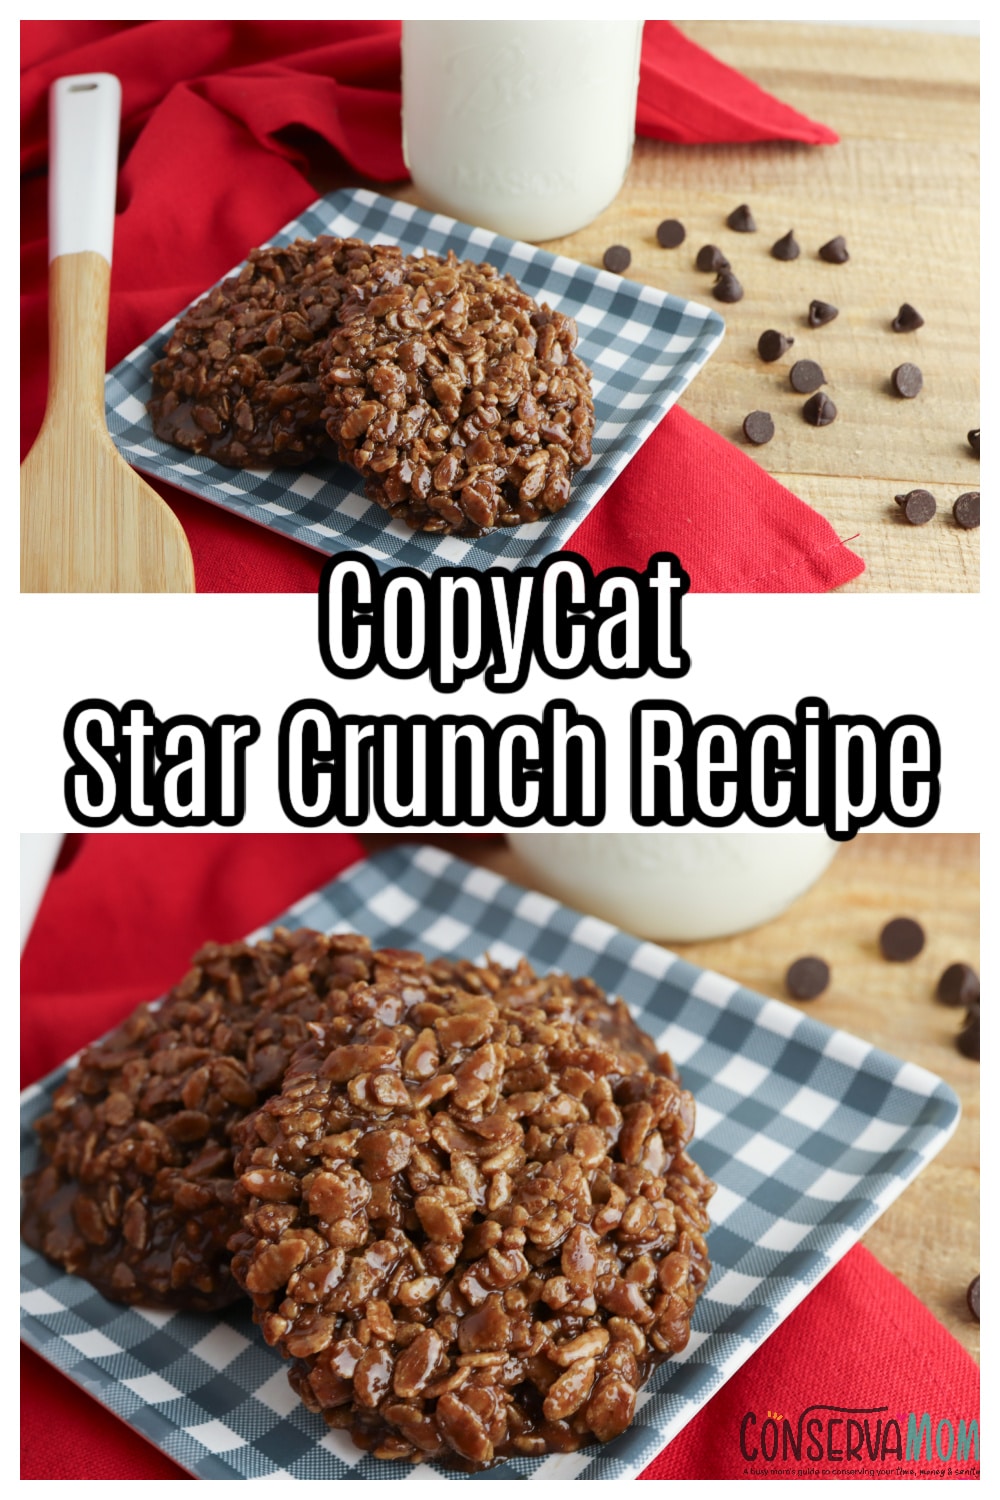 Copycat Star Crunch Cookies recipe